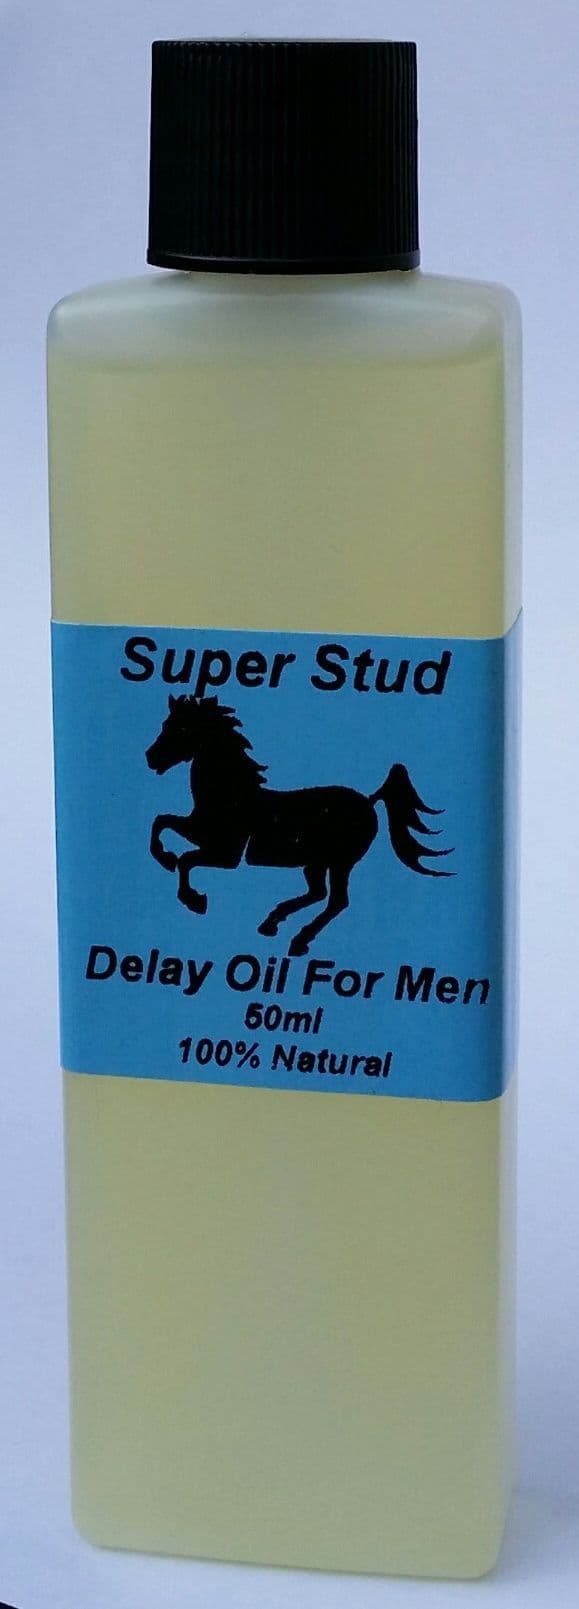 SUPER STUD DELAY OIL